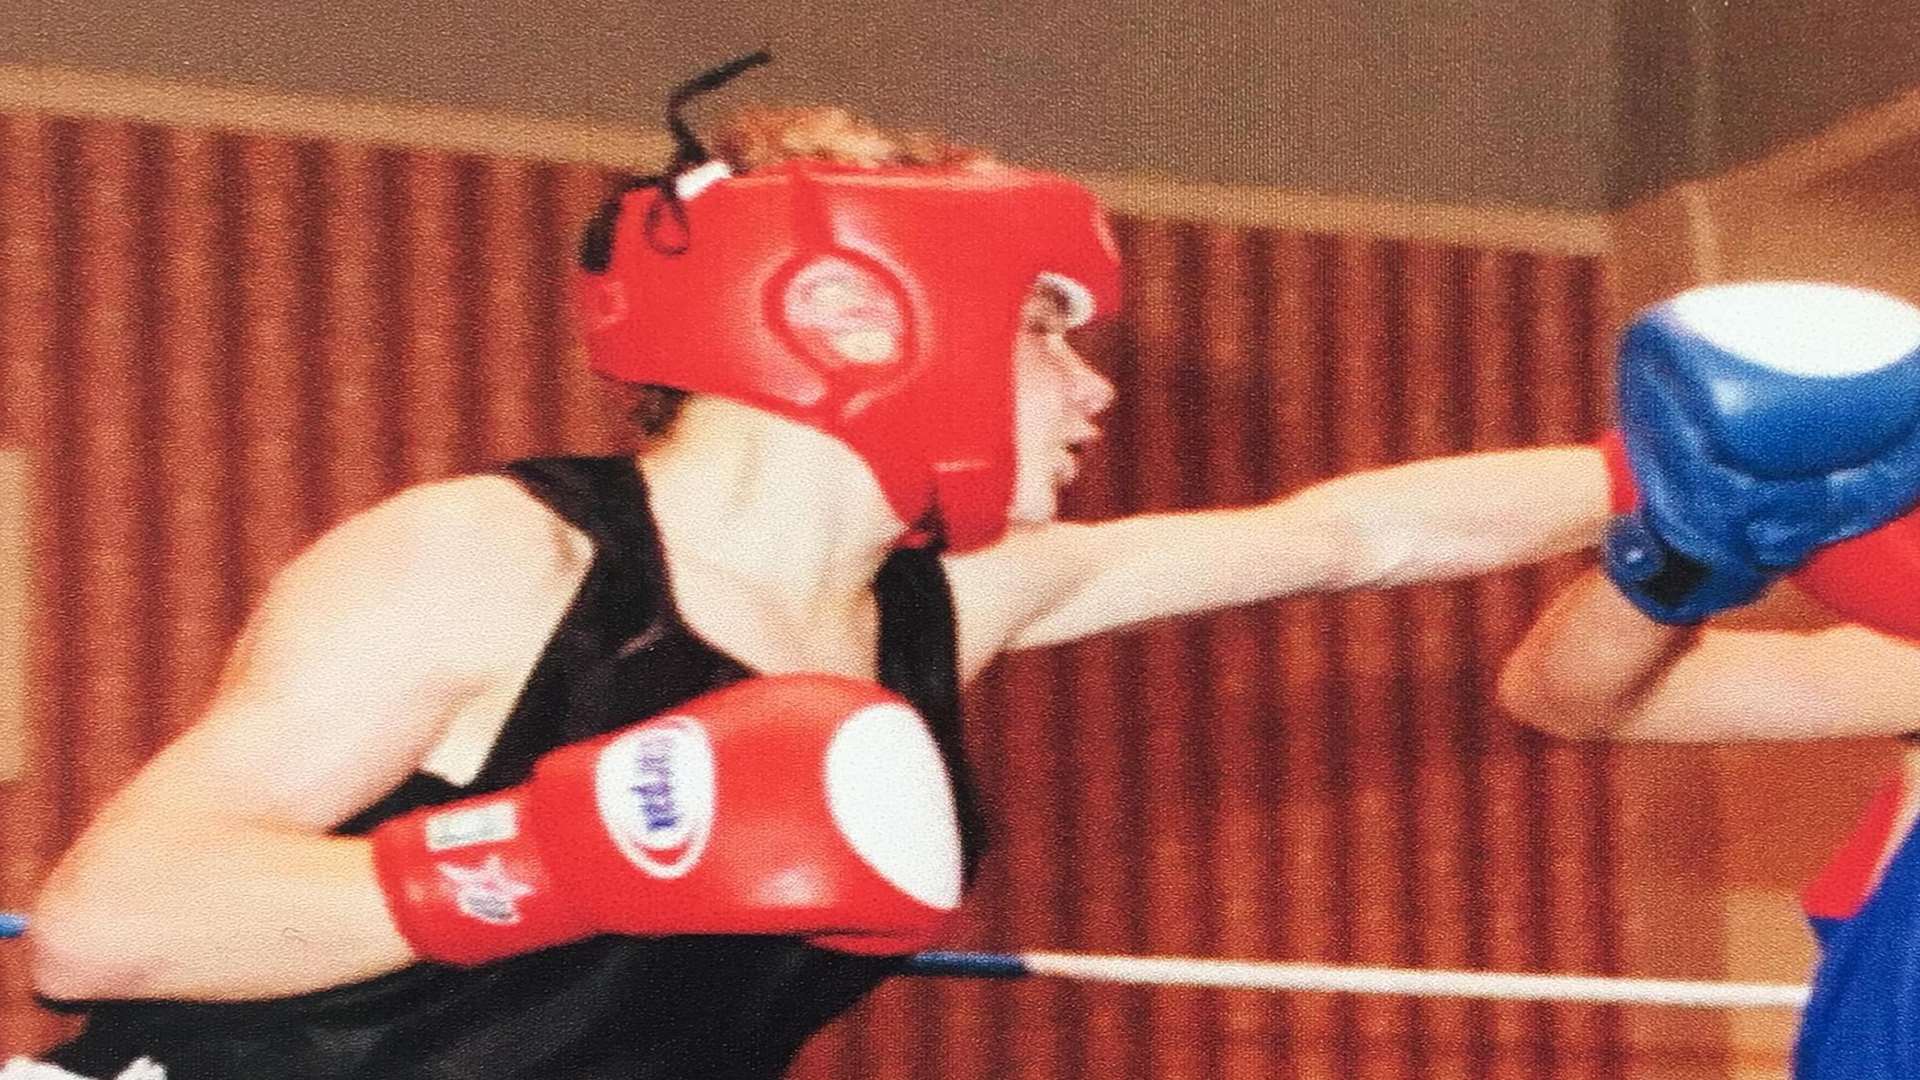 Jordan Lupton was a keen boxer